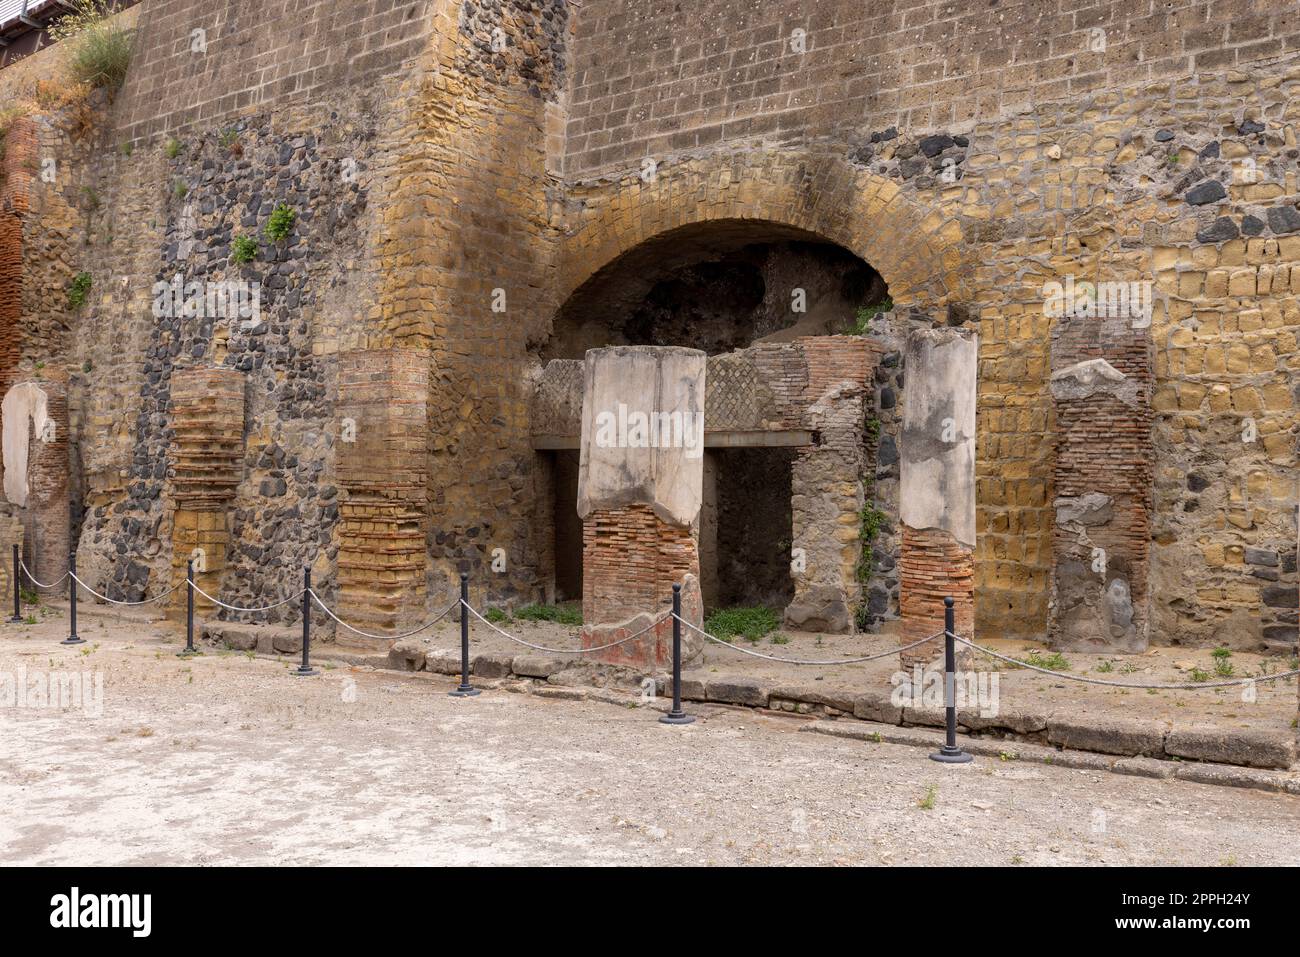 Rovine di un'antica città distrutta dall'eruzione del Vesuvio nel 79 d.C. nei pressi di Napoli, Ercolano, Italia. Foto Stock